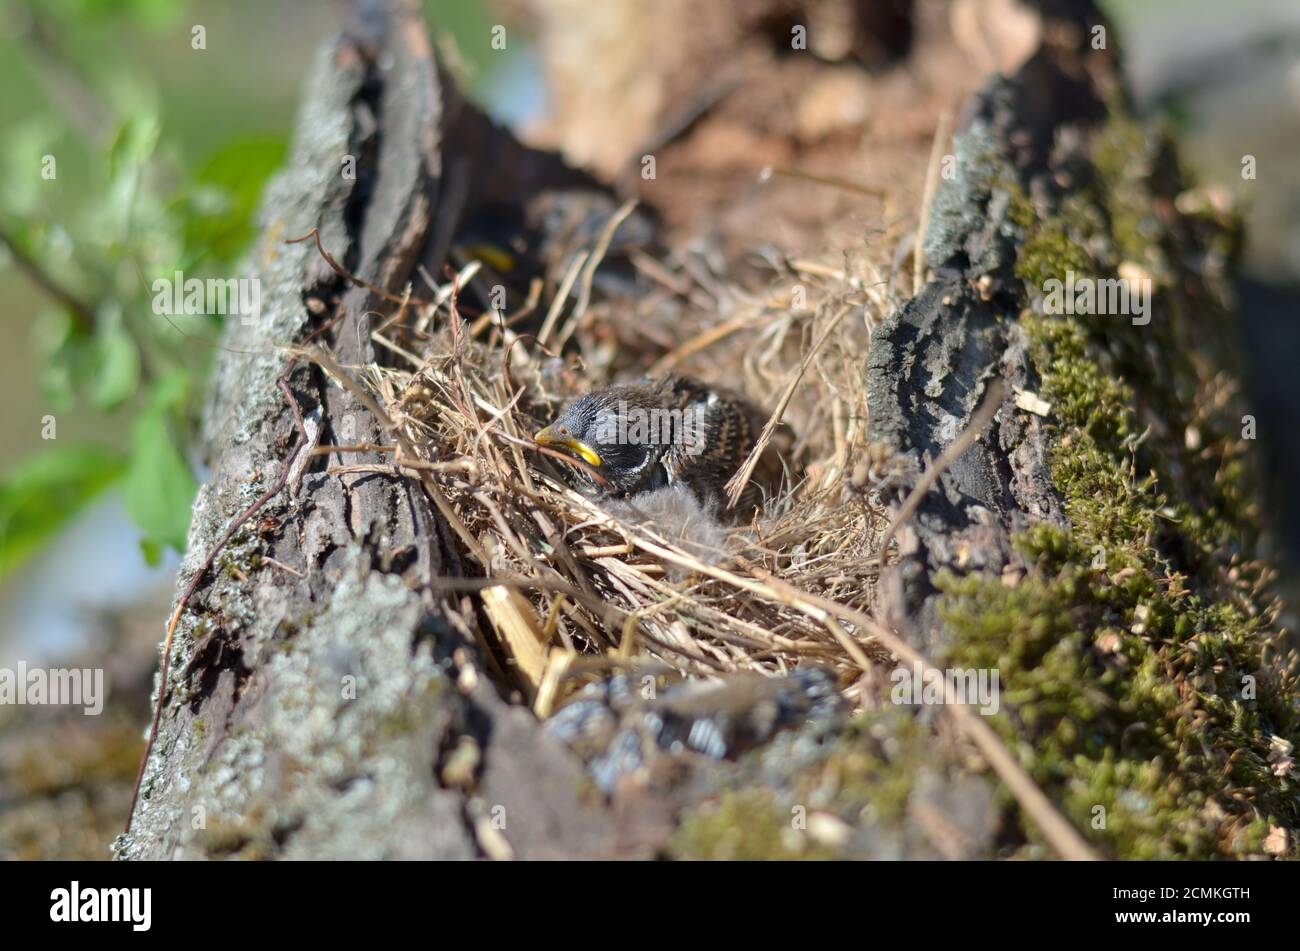 Casa passera - Passer domesticus. Sparrow accoccolato seduto nel nido. Profondità di campo poco profonda. Foto Stock